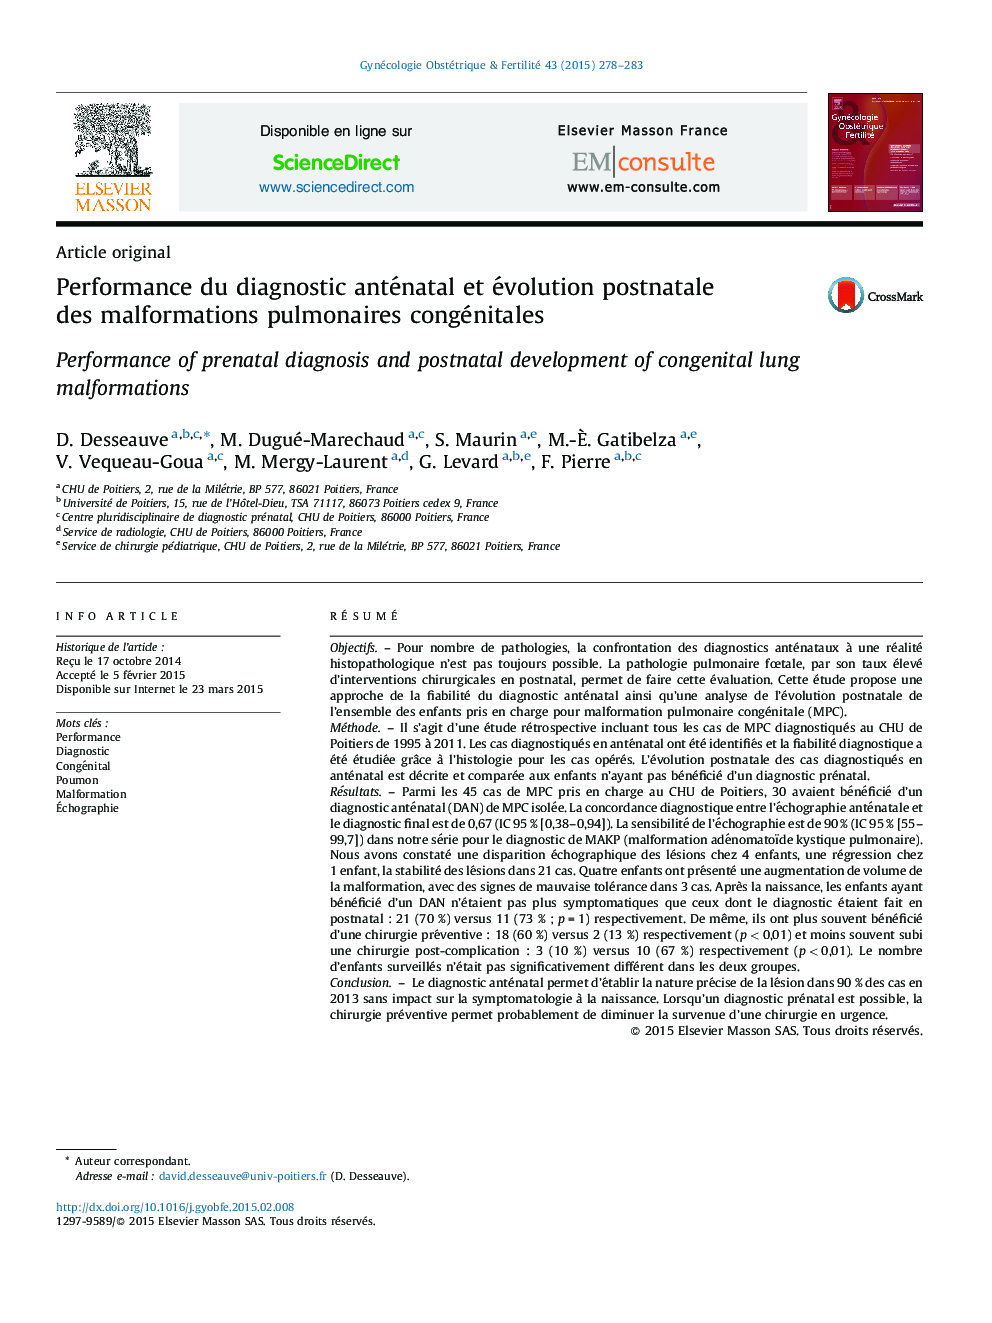 Performance du diagnostic anténatal et évolution postnatale des malformations pulmonaires congénitales